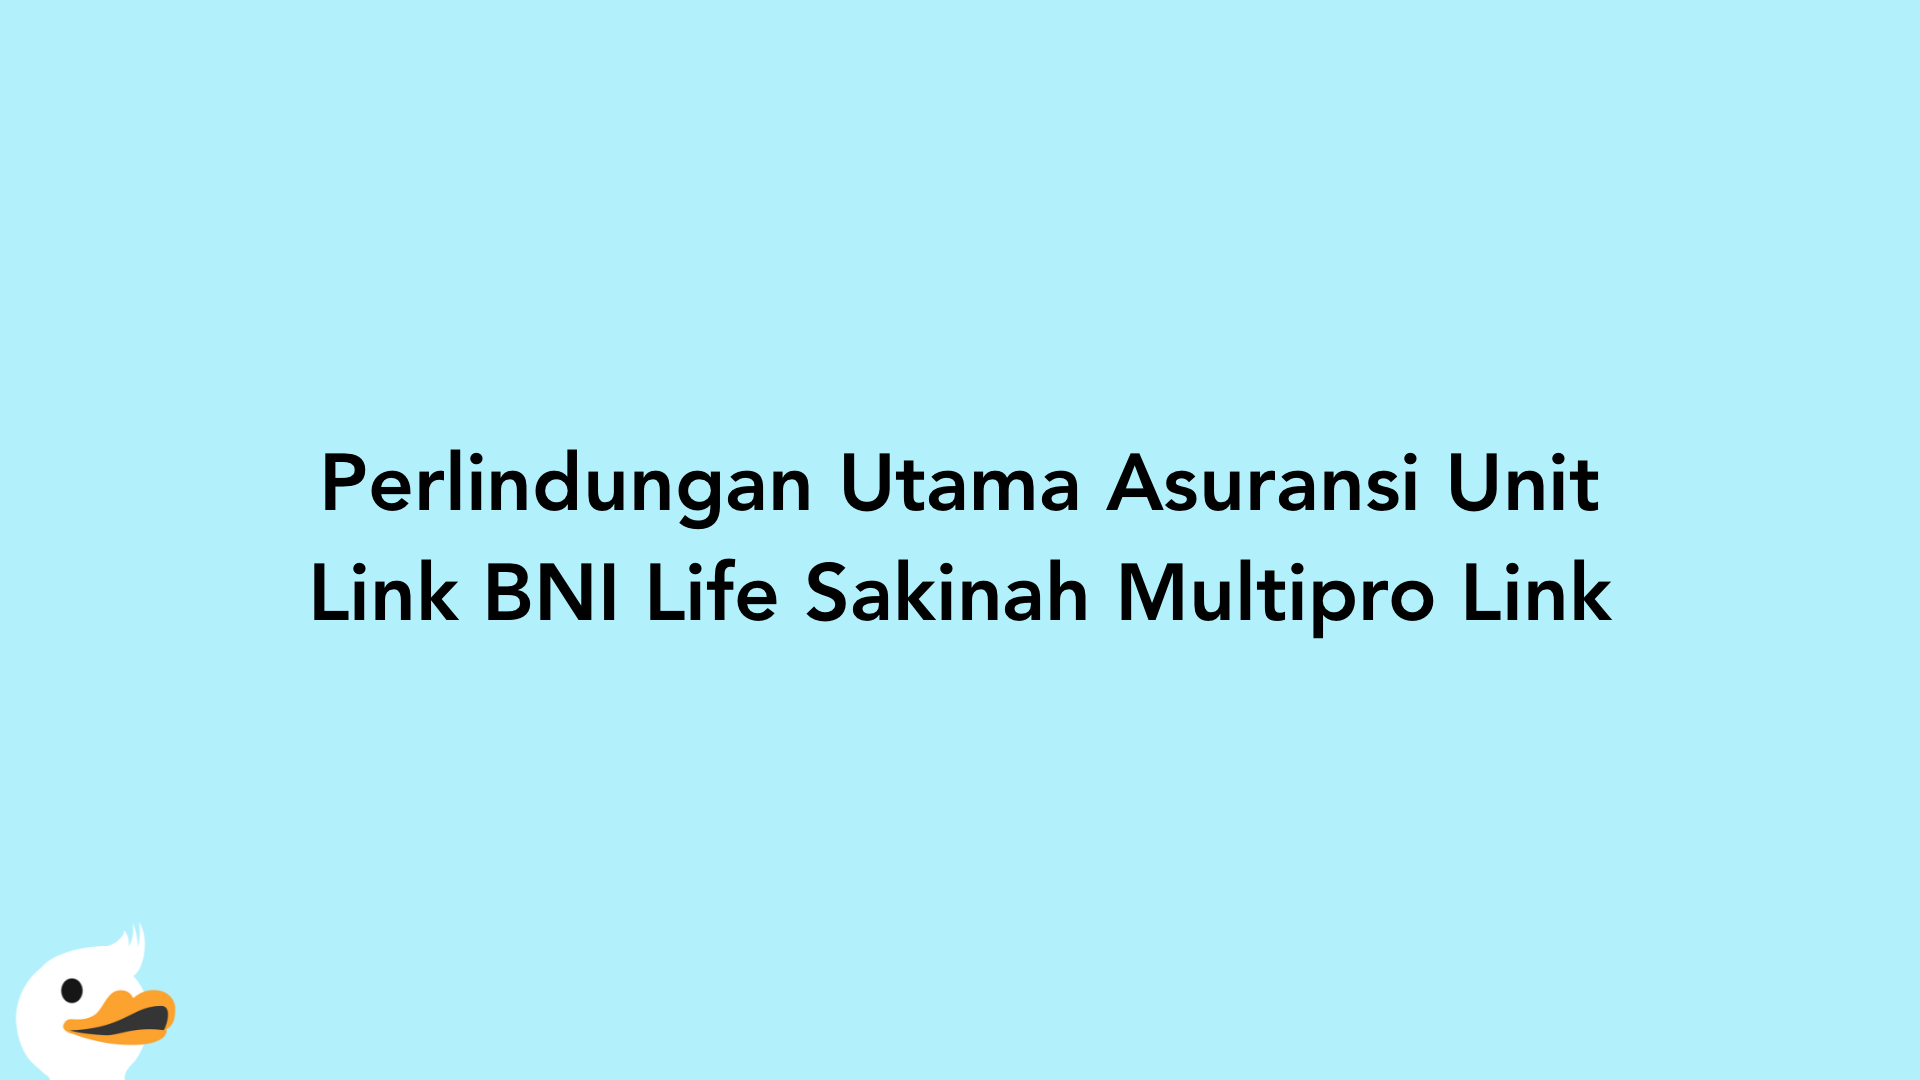 Perlindungan Utama Asuransi Unit Link BNI Life Sakinah Multipro Link